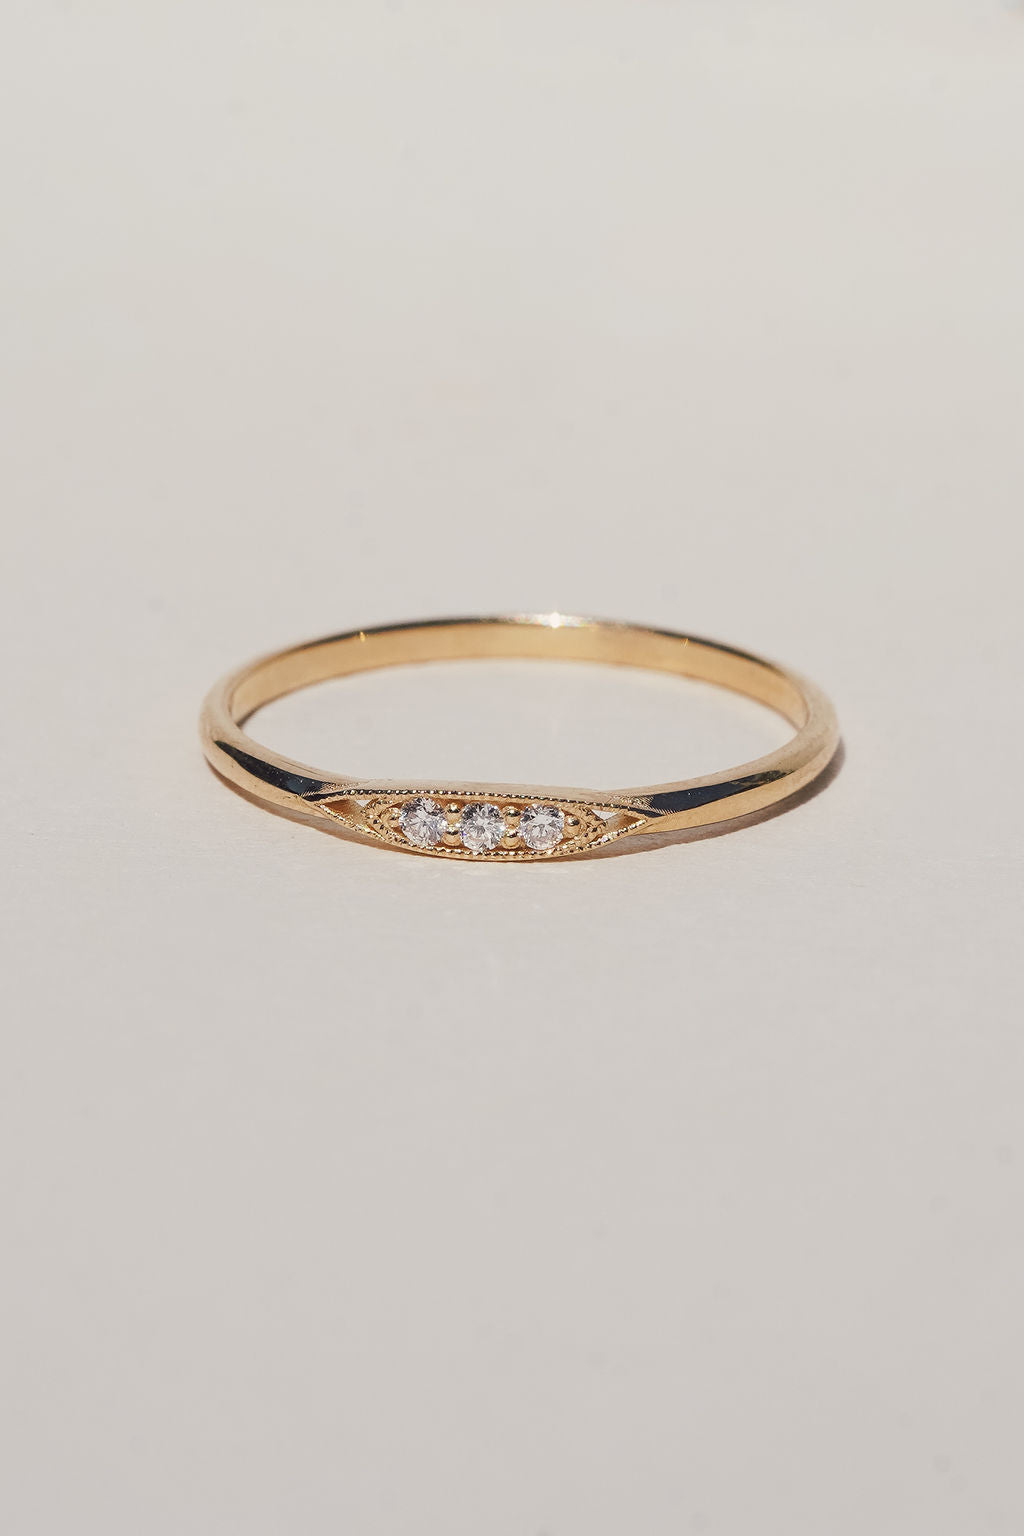 Sileas Ring / White Diamond + 14K Gold